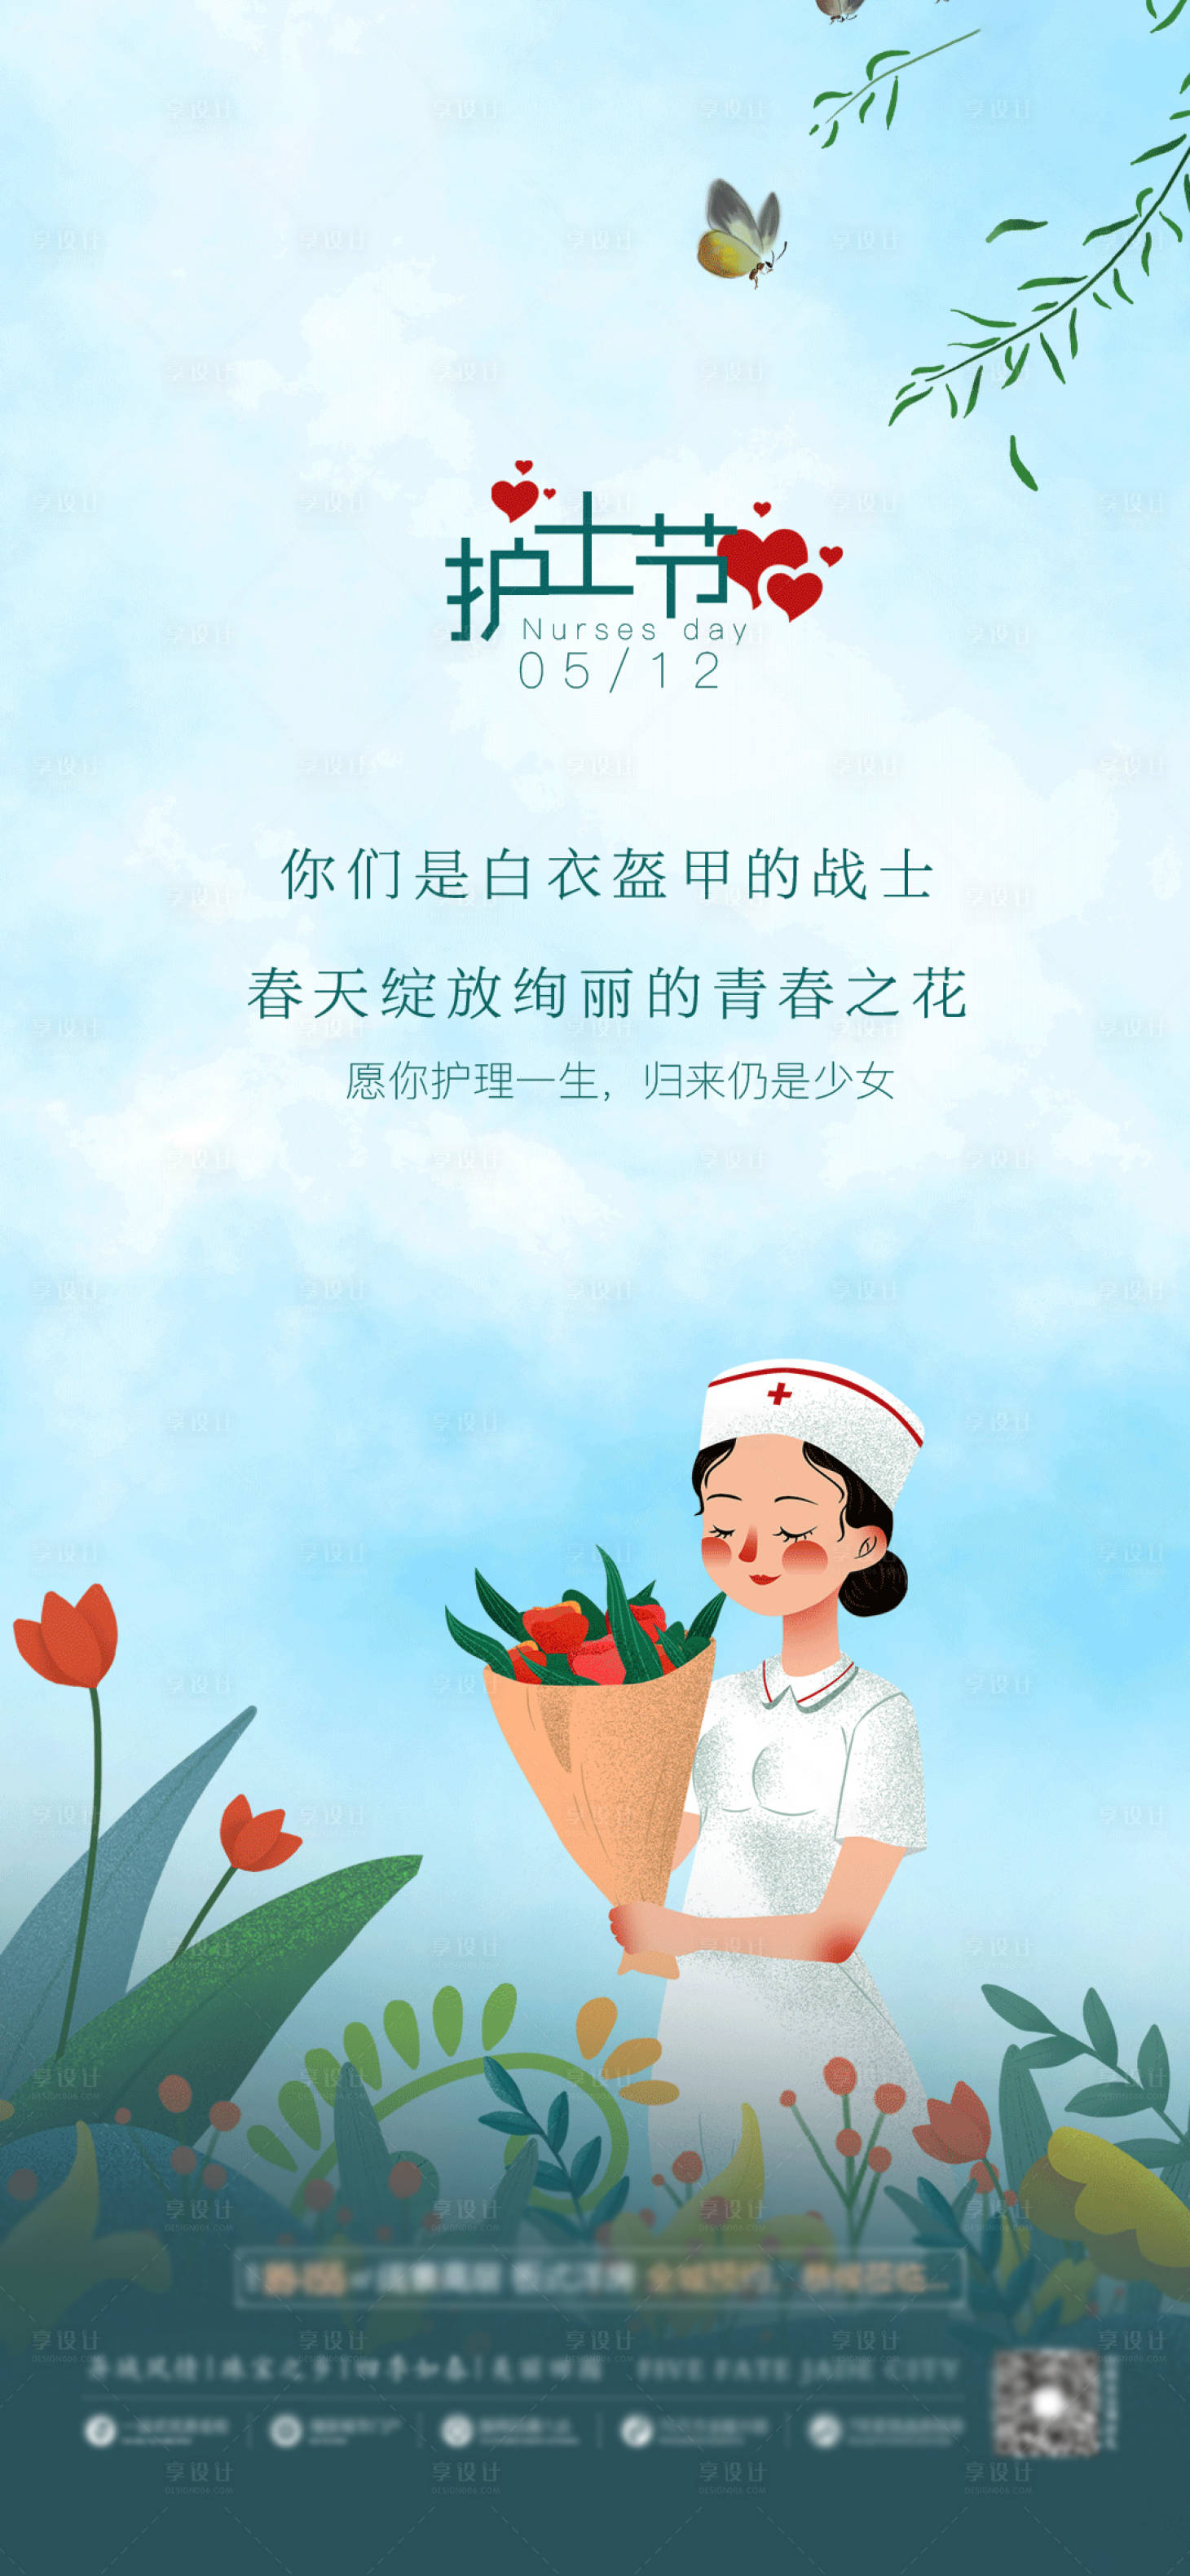 国际护士节之护士写实人物唯美插画图片-千库网